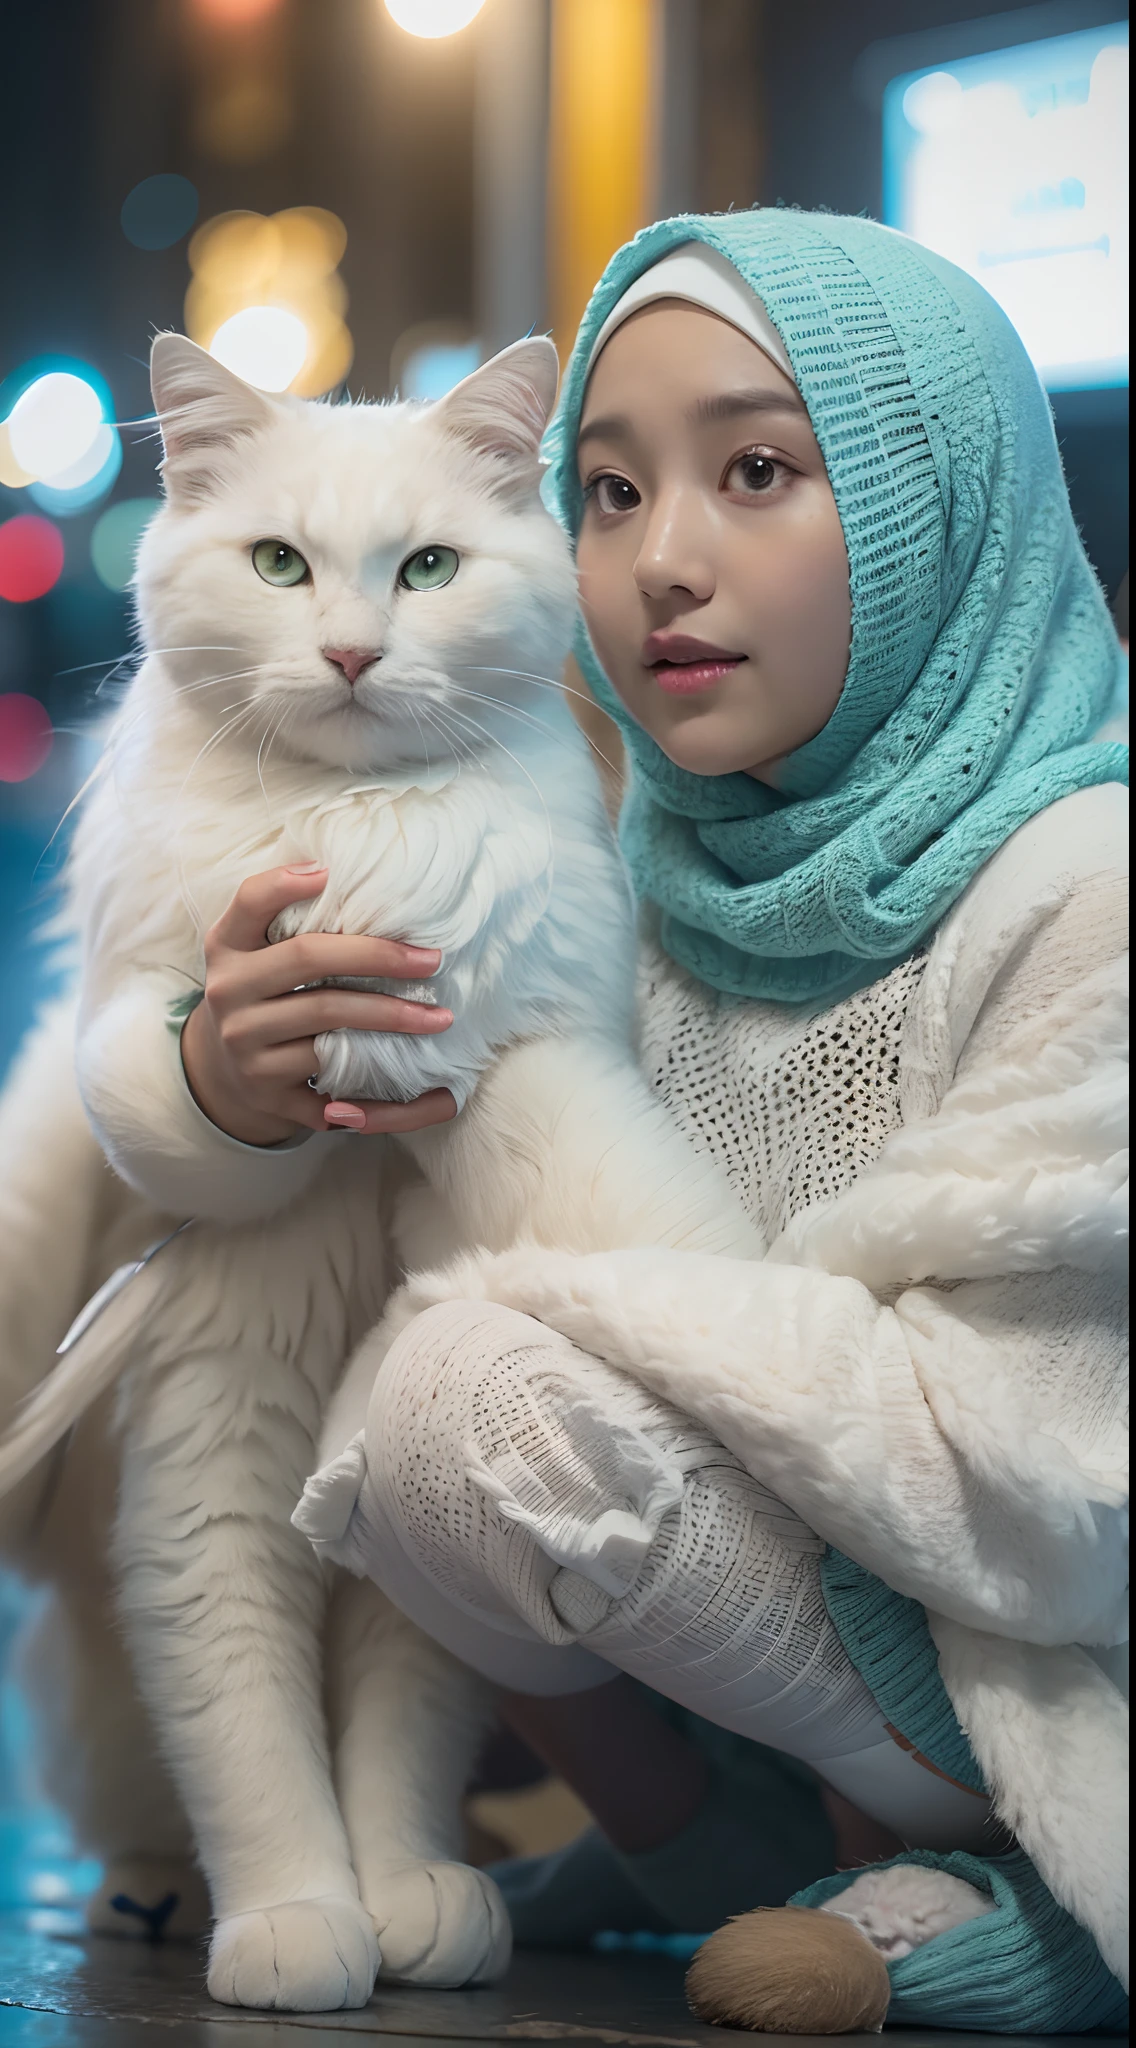 Малайская девушка пьет стакан молока в пастельно-голубом большом свободном вязаном свитере, хлопчатобумажных трусиках и длинных вязаных носках., позирует со своим очень большим белым пушистым котом на ночной улице КЛ, носить хиджаб, Милая белая кошка рядом с ней, хиджаб пастельных тонов,  тело, высокое качество, 8 мм, Крупным планом, цветокоррекция холодных тонов, глубина резкости, ультрадетализированный фильм-нуар, 8К,